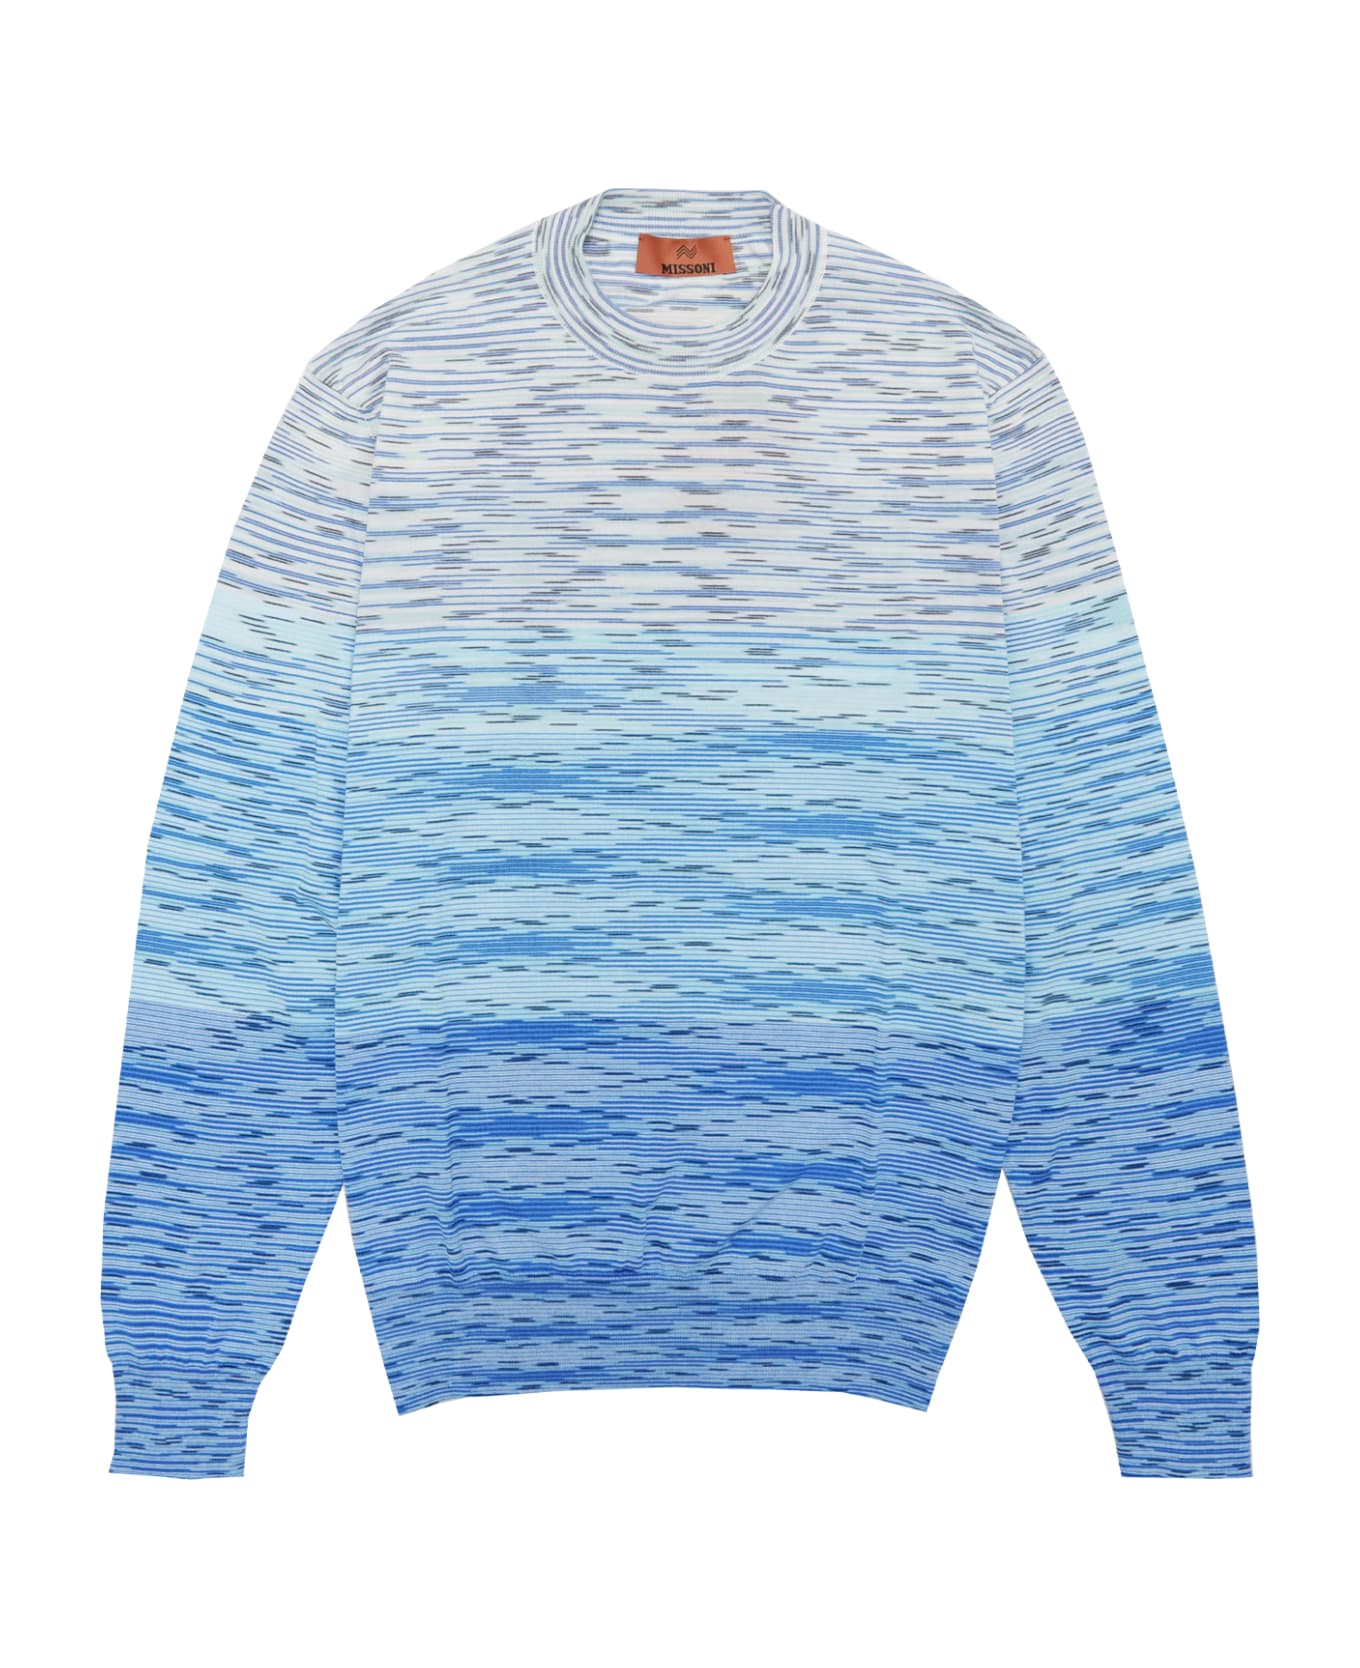 Missoni Sweater - Blue ニットウェア